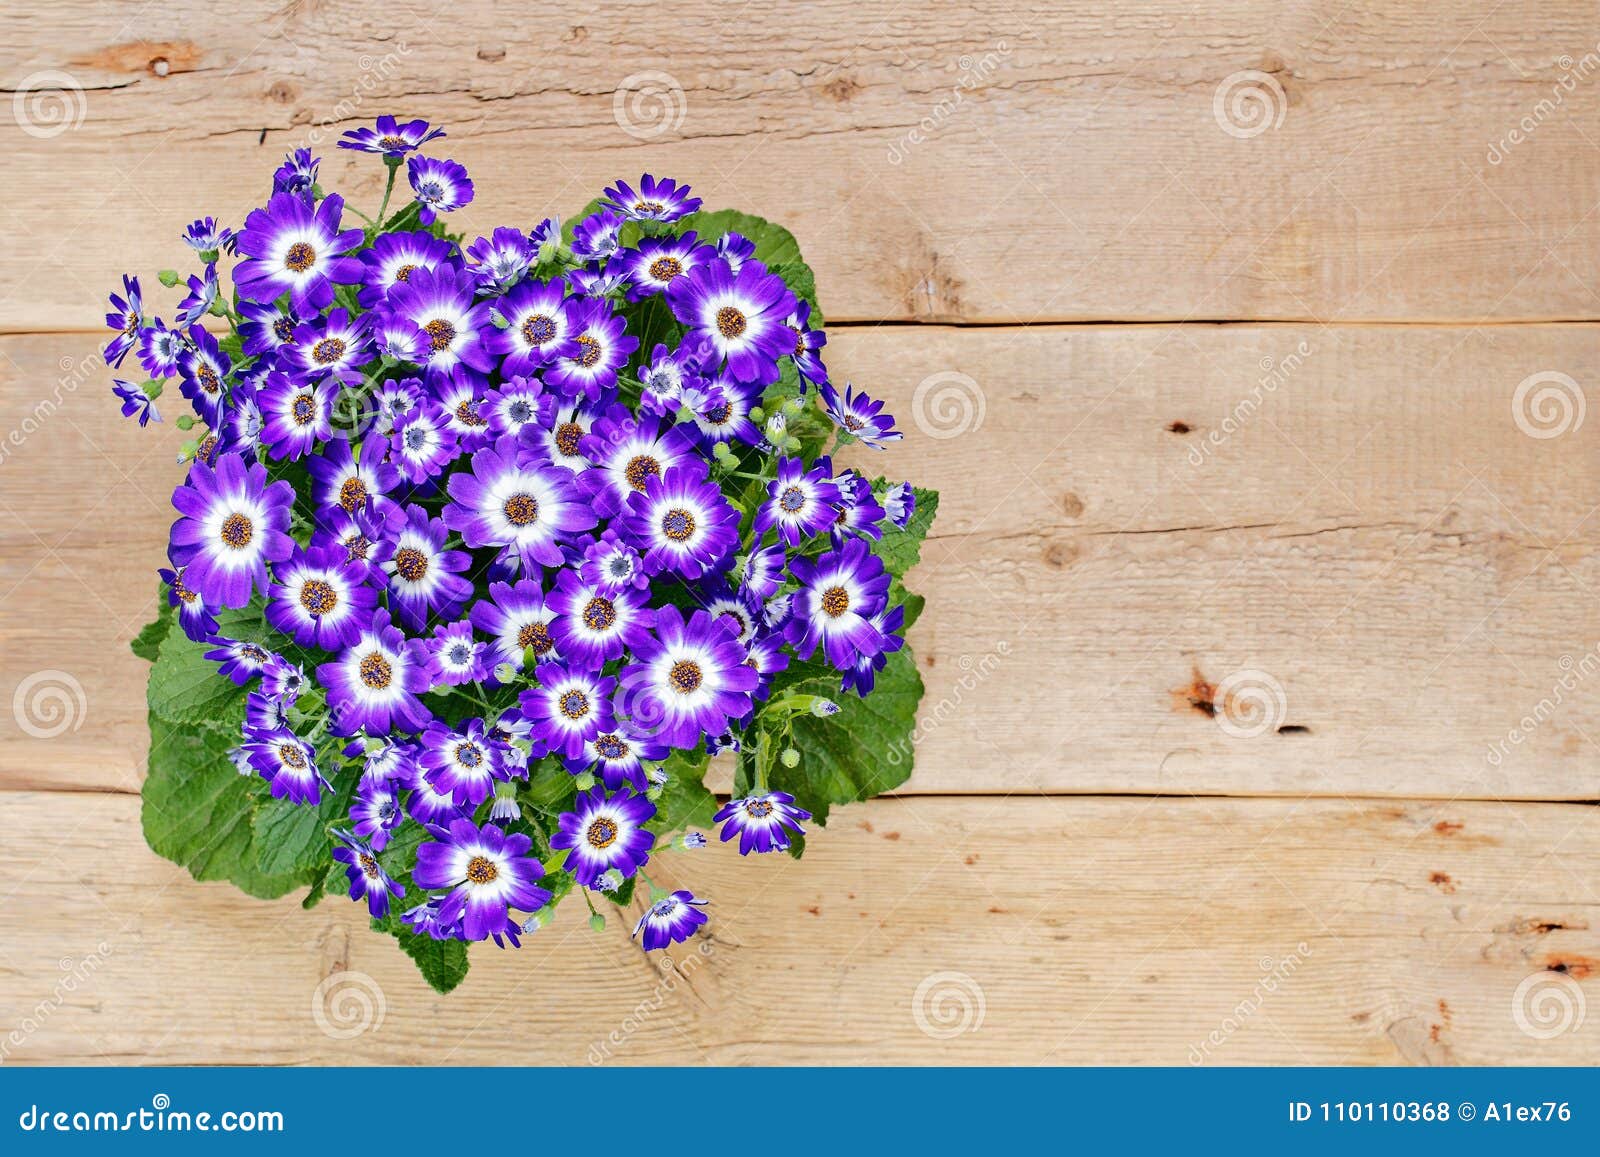 Fleurs Violettes Et Blanches Au-dessus De Fond En Bois Photo stock - Image  du personne, carte: 110110368